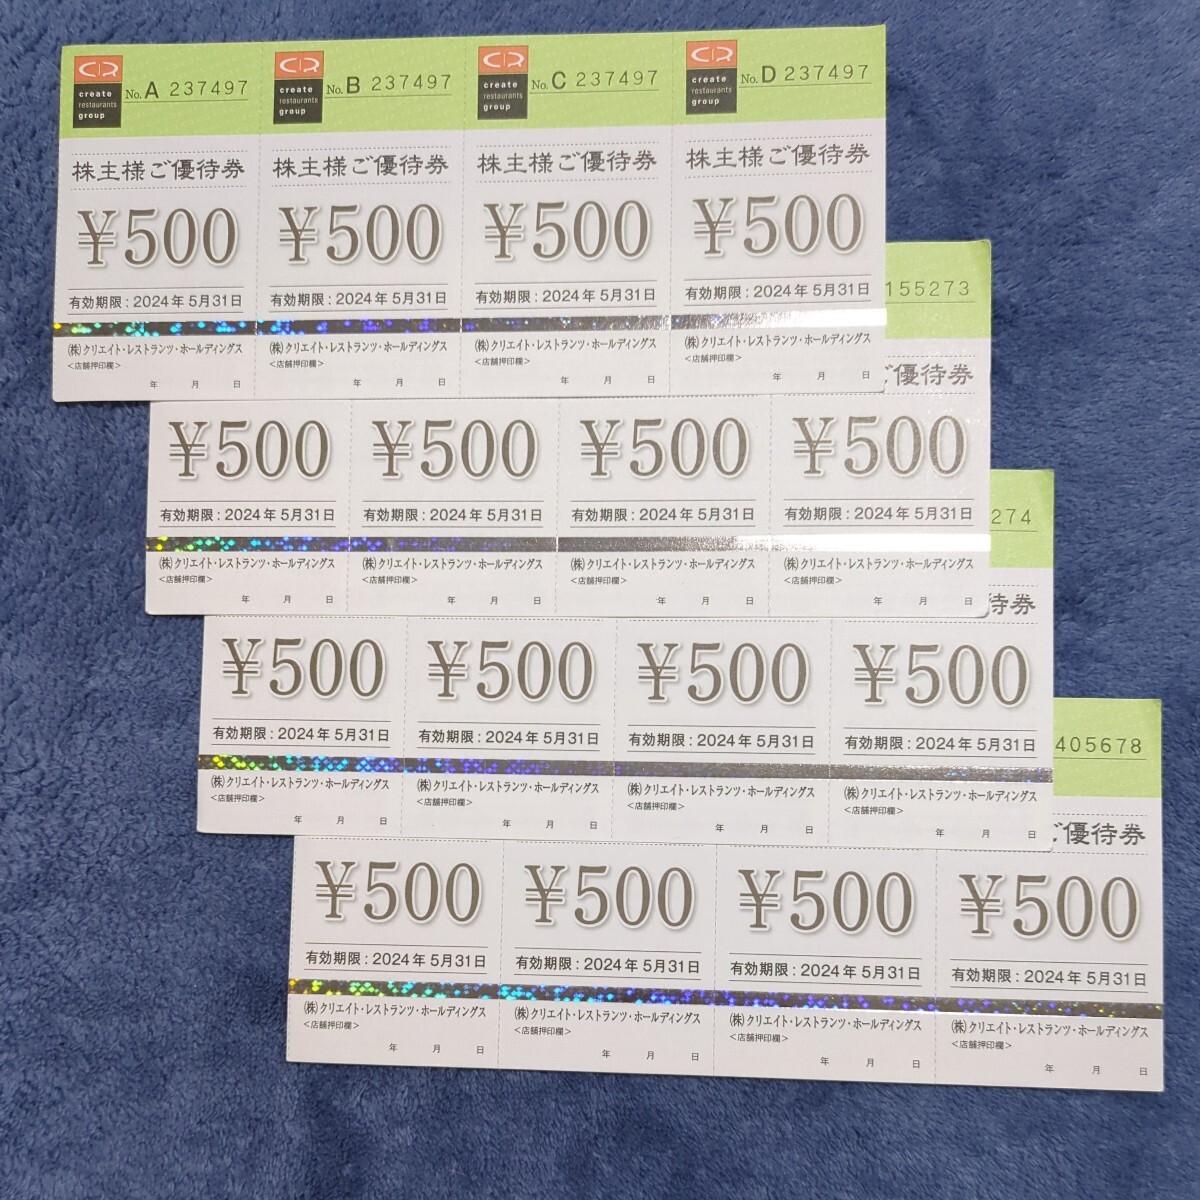 [ бесплатная доставка ]klieito* ресторан tsu* удерживание s акционер пригласительный билет 8,000 иен иметь временные ограничения действия 2024 год 5 месяц 31 до дня 